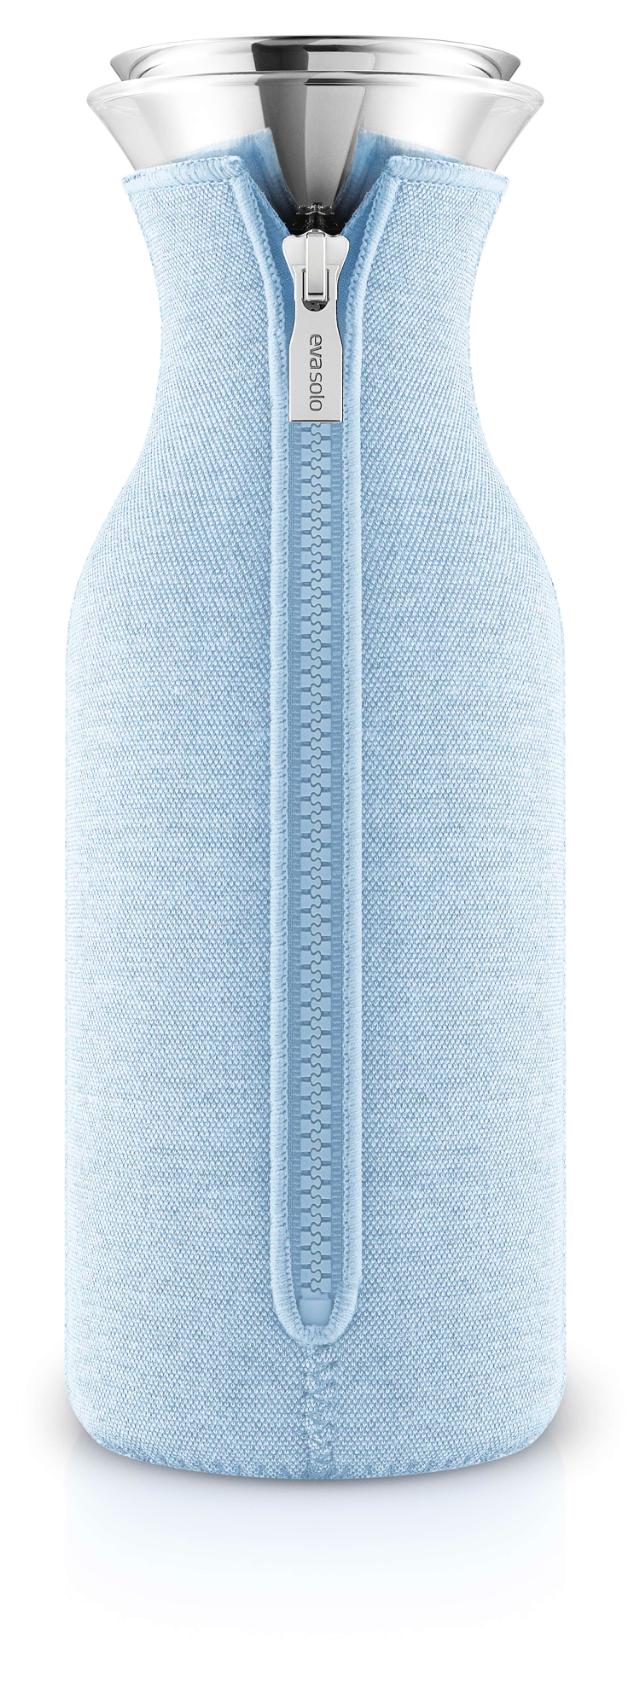 Carafe de réfrigérateur - 1 litre - Bleu ciel